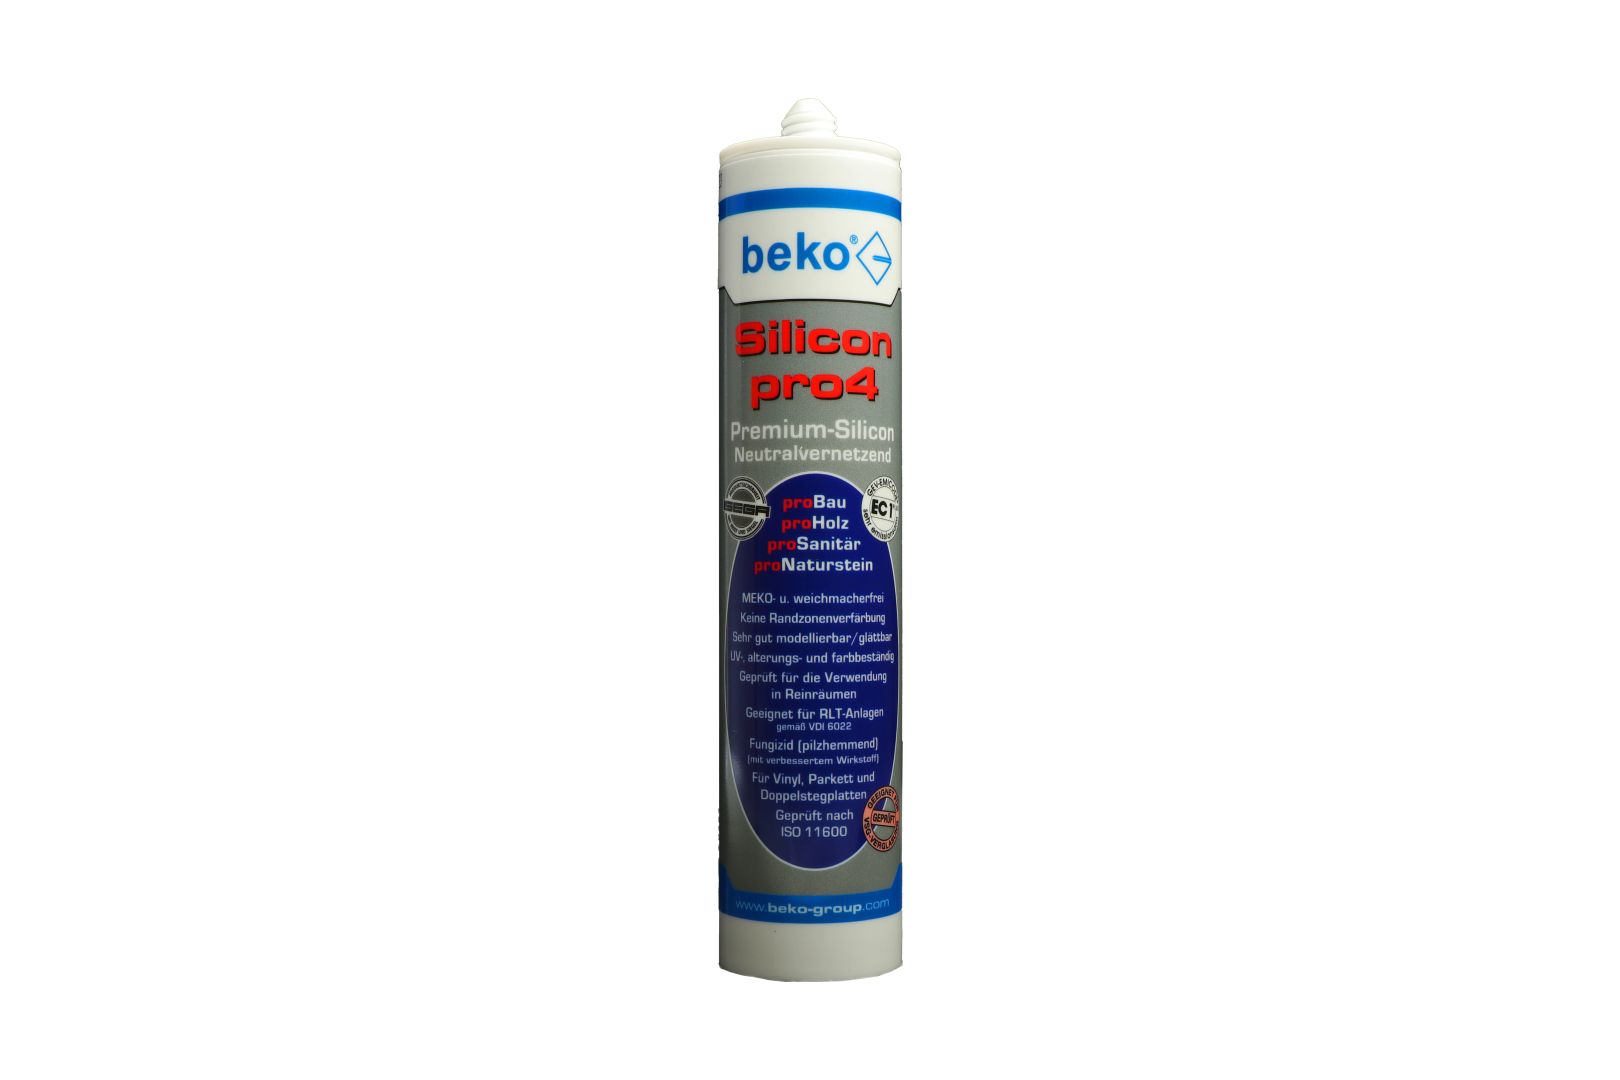 beko Silicon pro4, Premium-Silicon, Silikon-Dichtstoff, neutralvernetzend, bronze, 310 ml